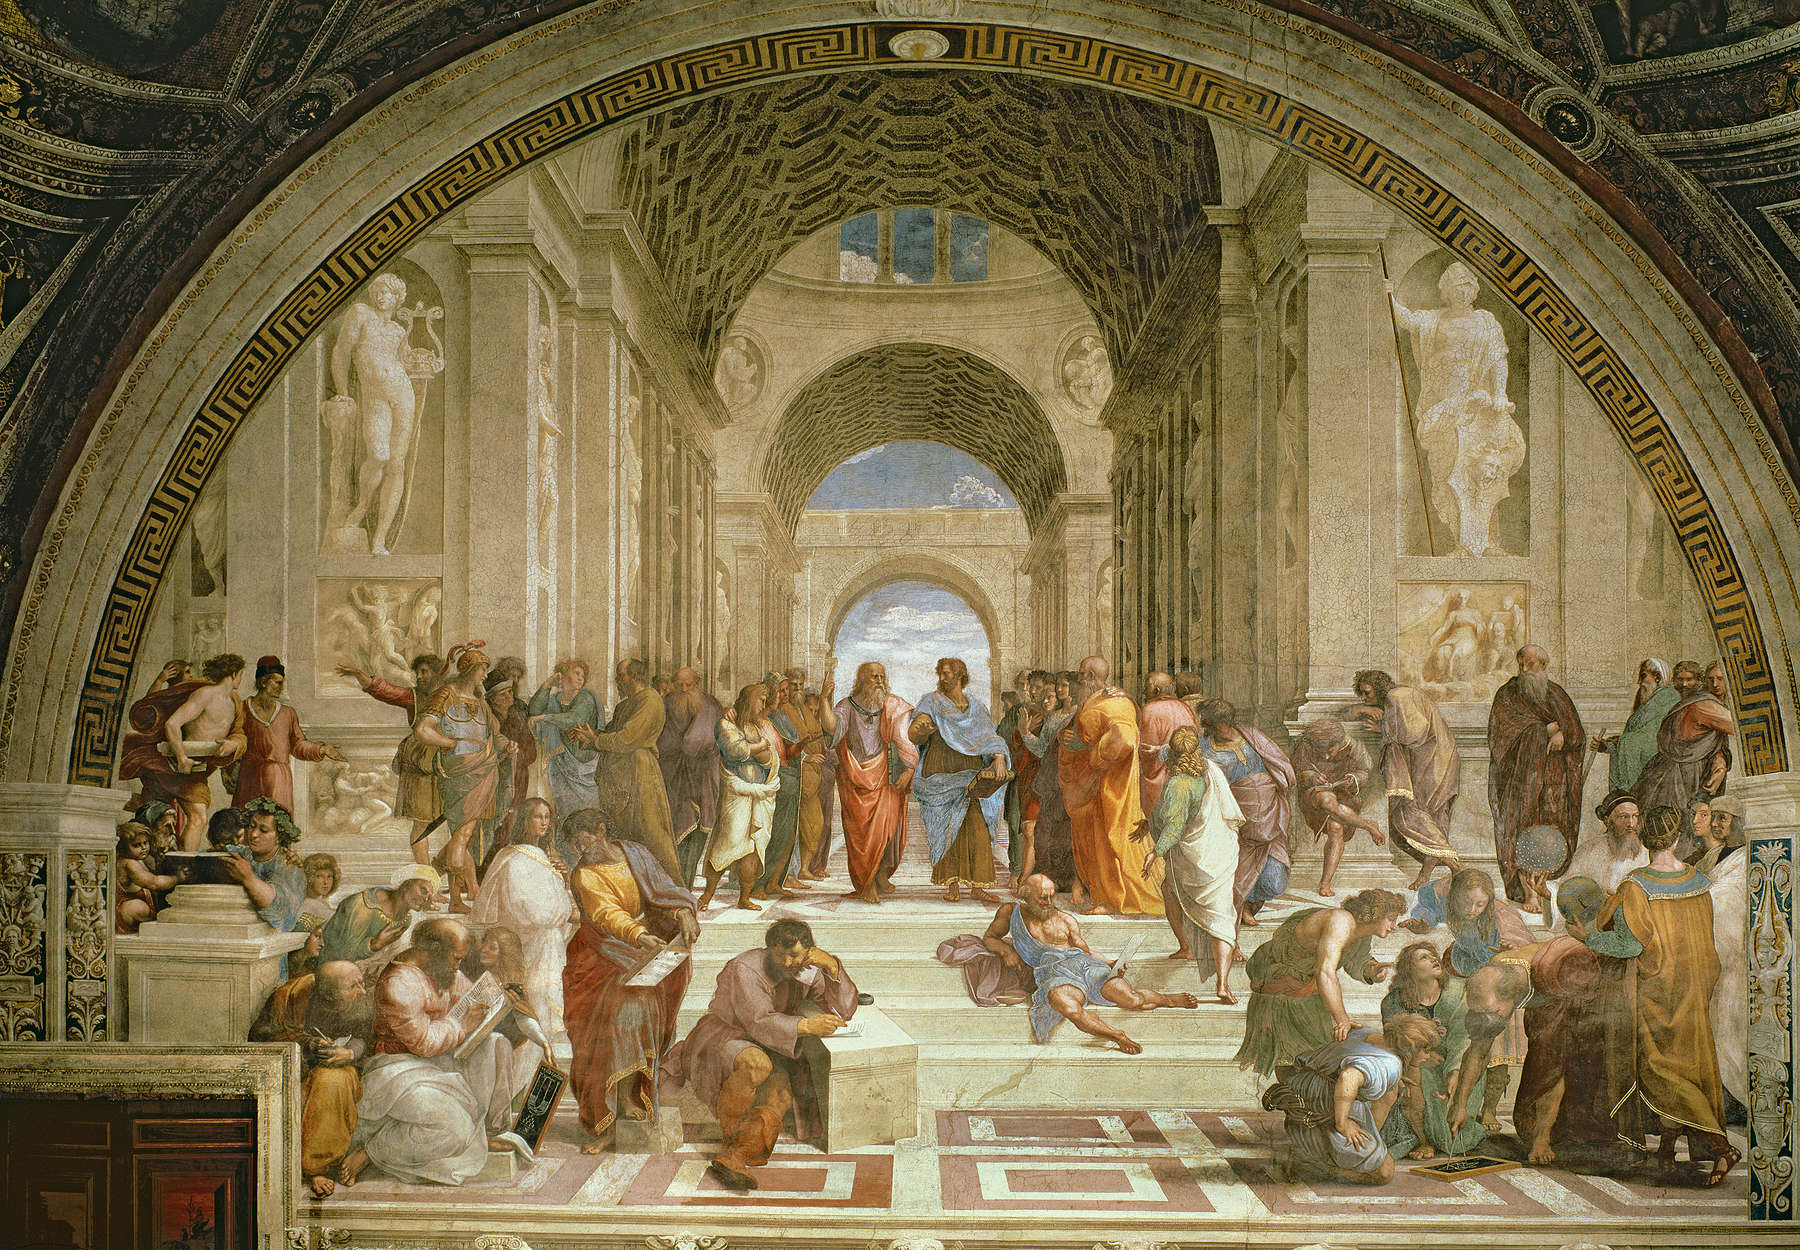             Scuola di Atene", murale di Raffaello
        